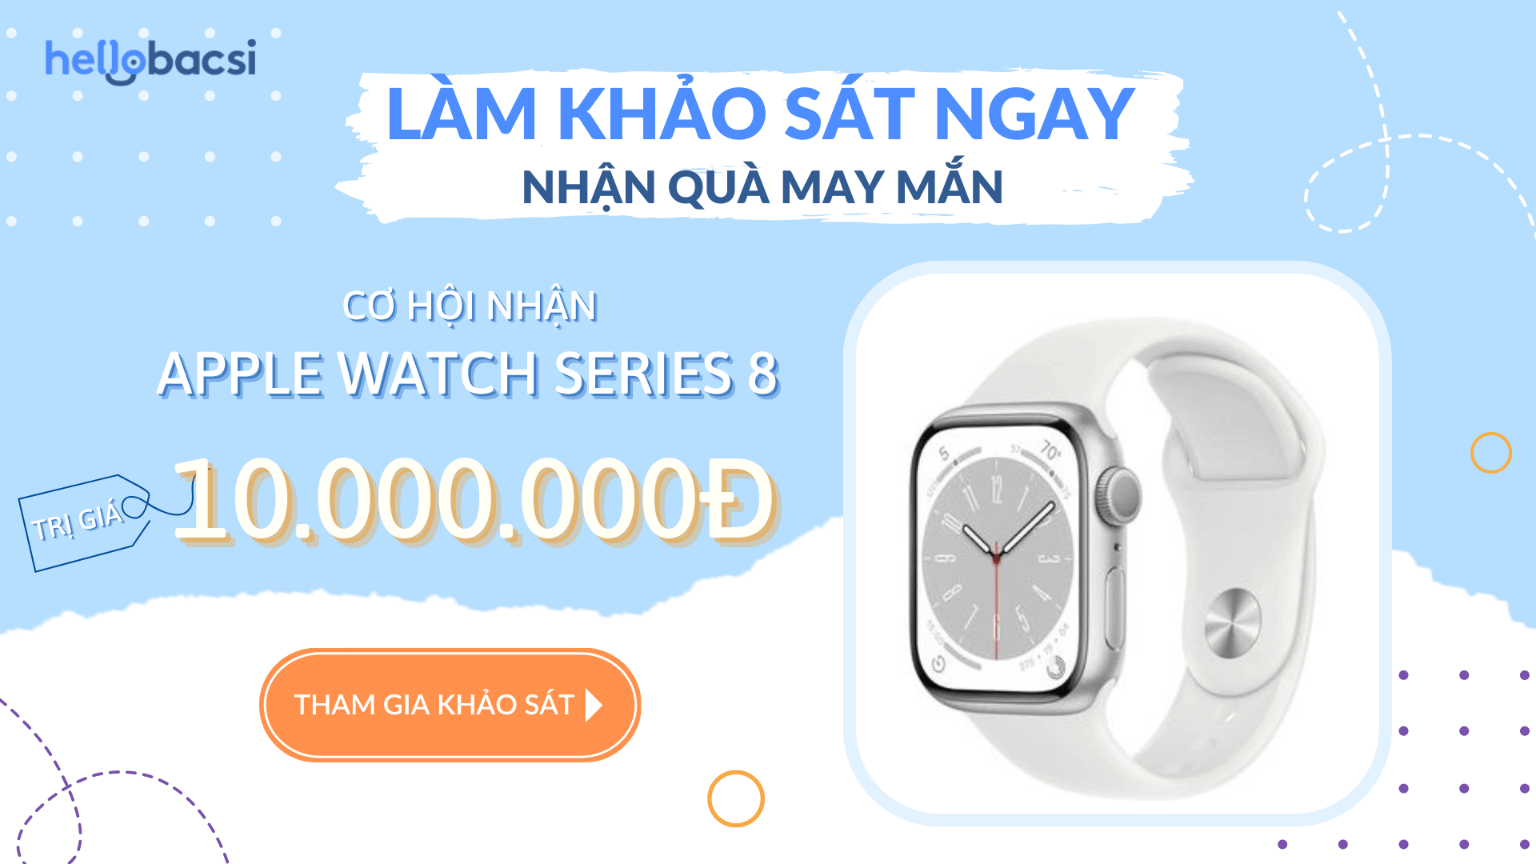 🎁🎁🎁 [Khảo sát có quà] Tặng đồng hồ Apple Watch Series 8 trị giá 10.000.000 VND